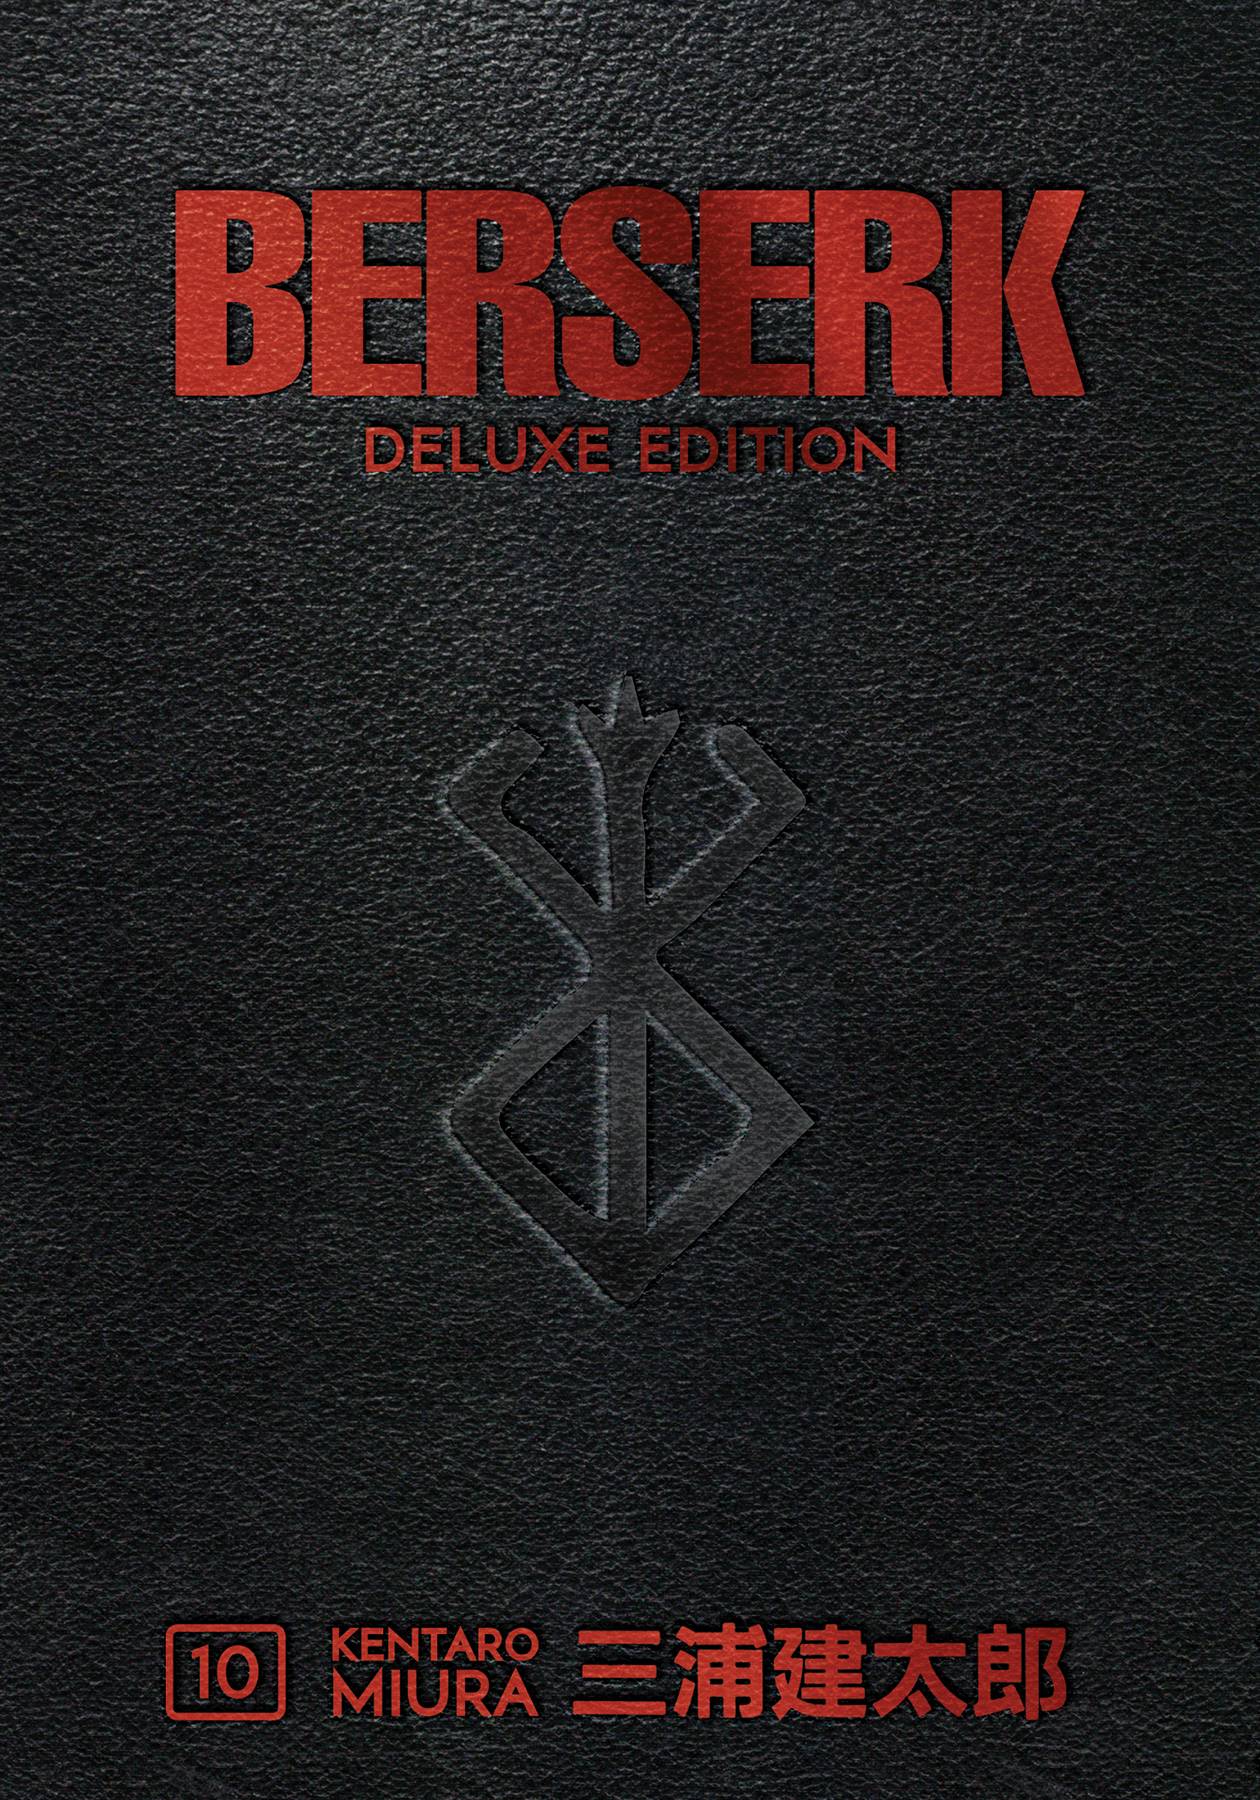 BERSERK DELUXE EDITION VOLUME 10